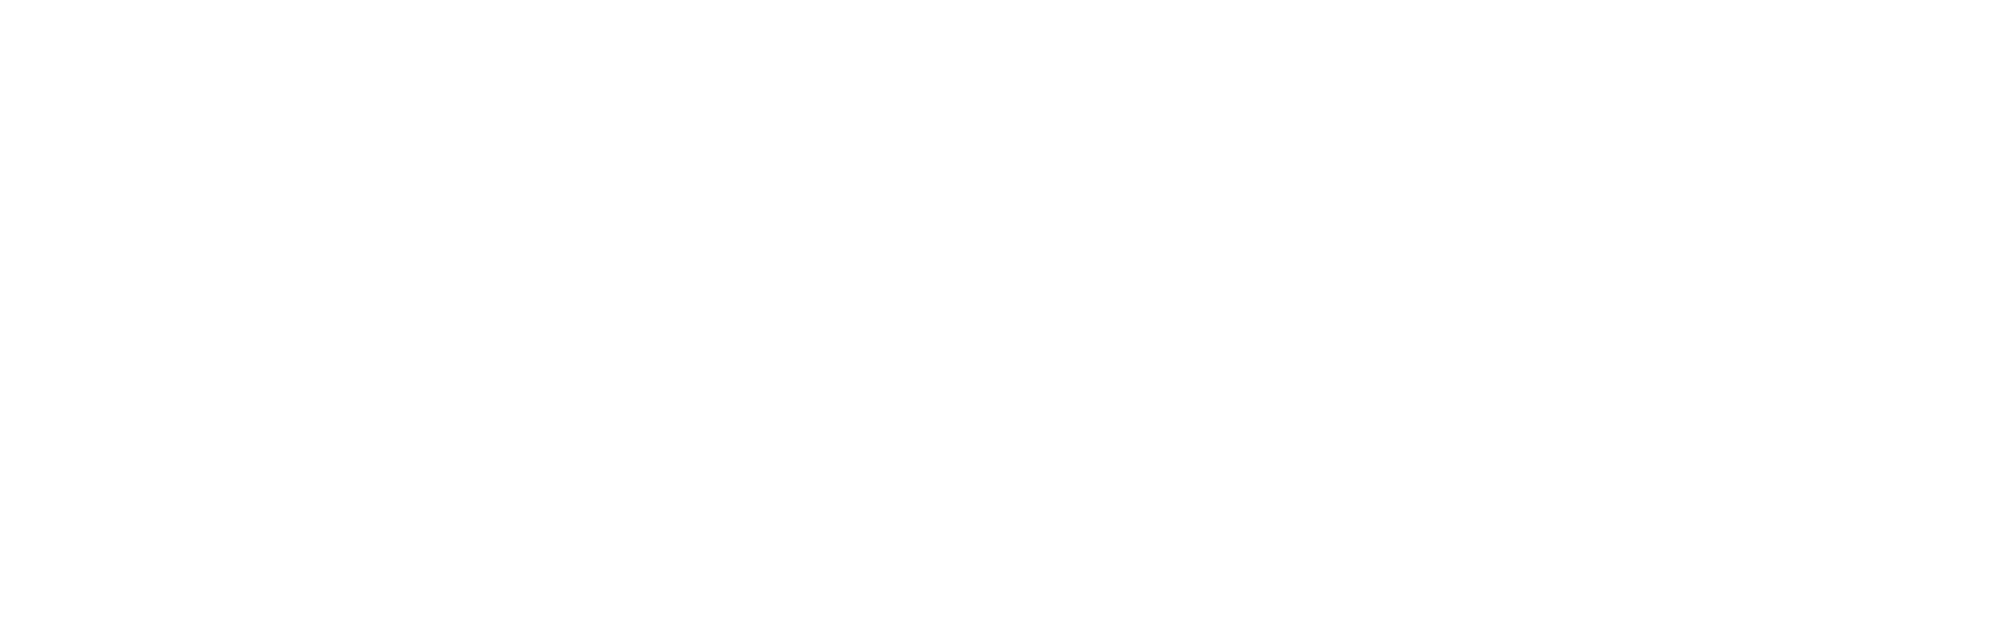 Calm Capital